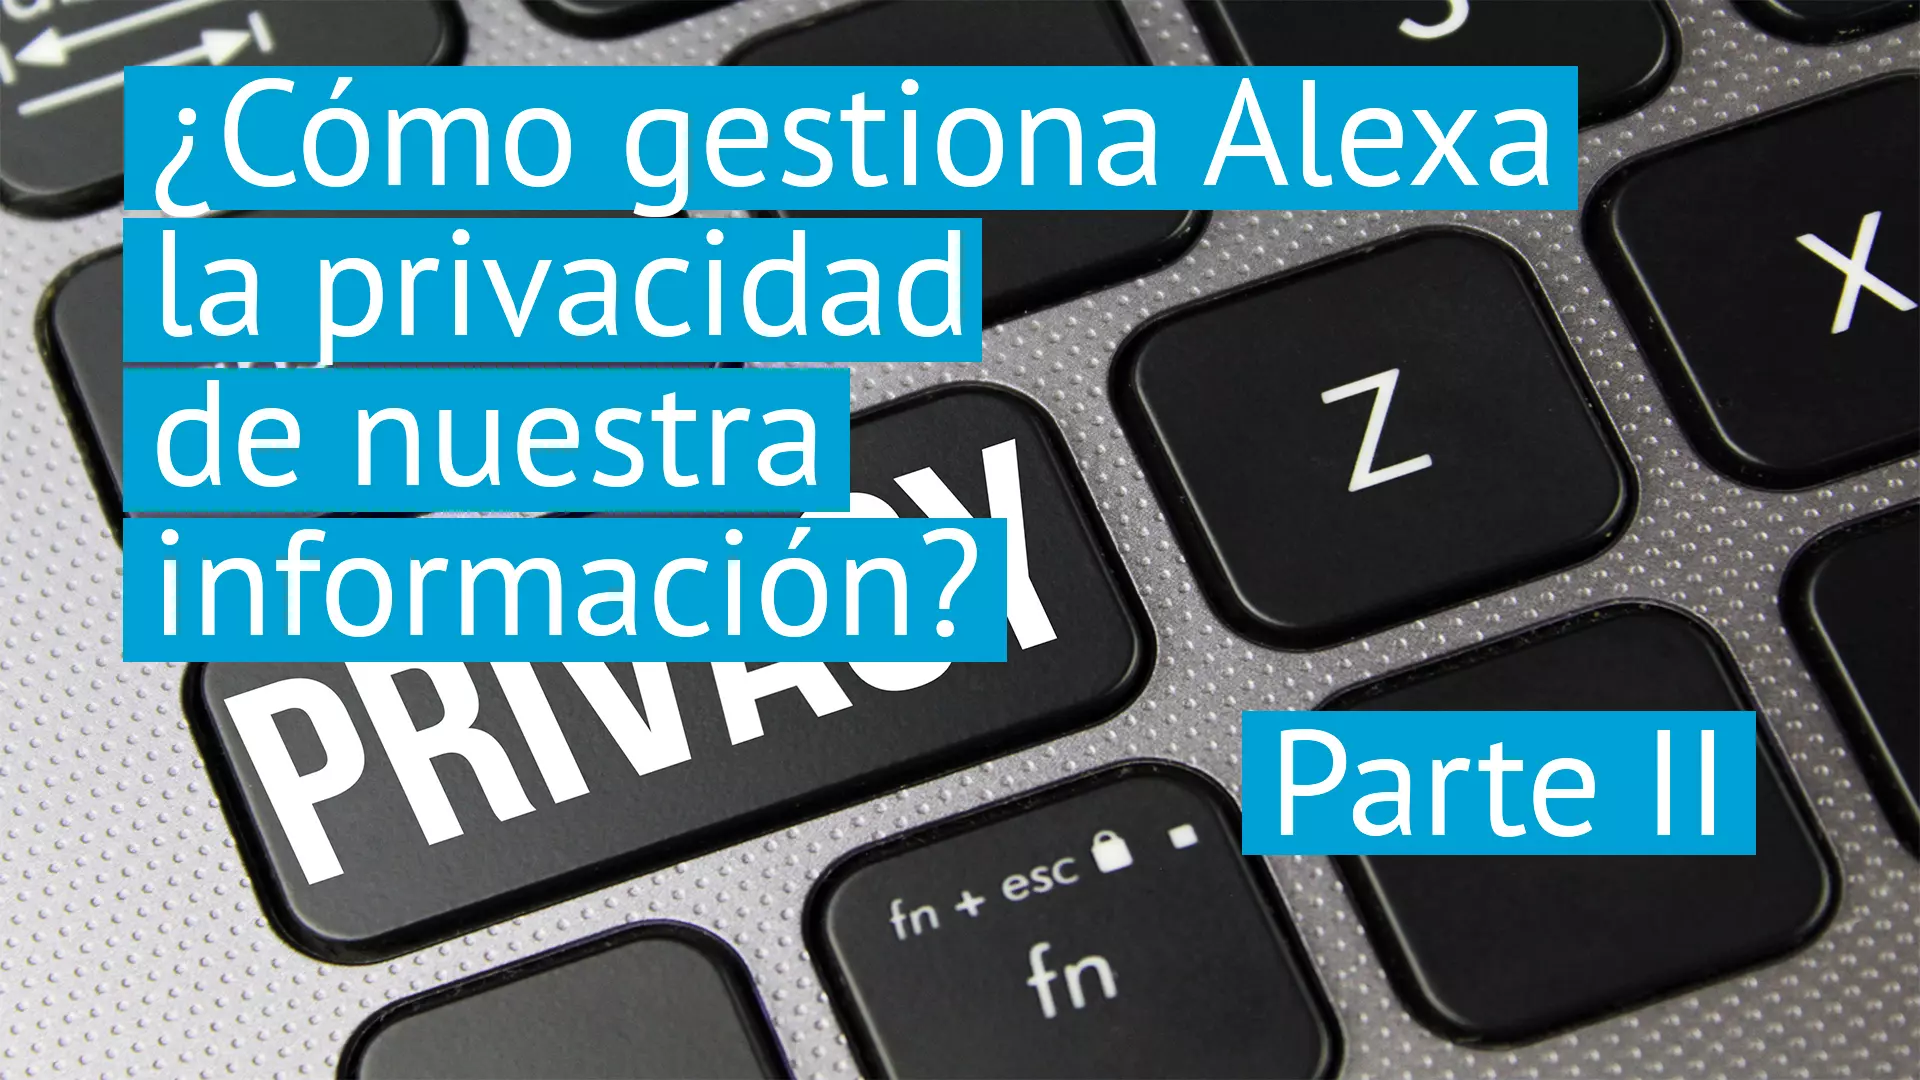 ¿Cómo gestiona Alexa la privacidad de nuestra información? Parte II